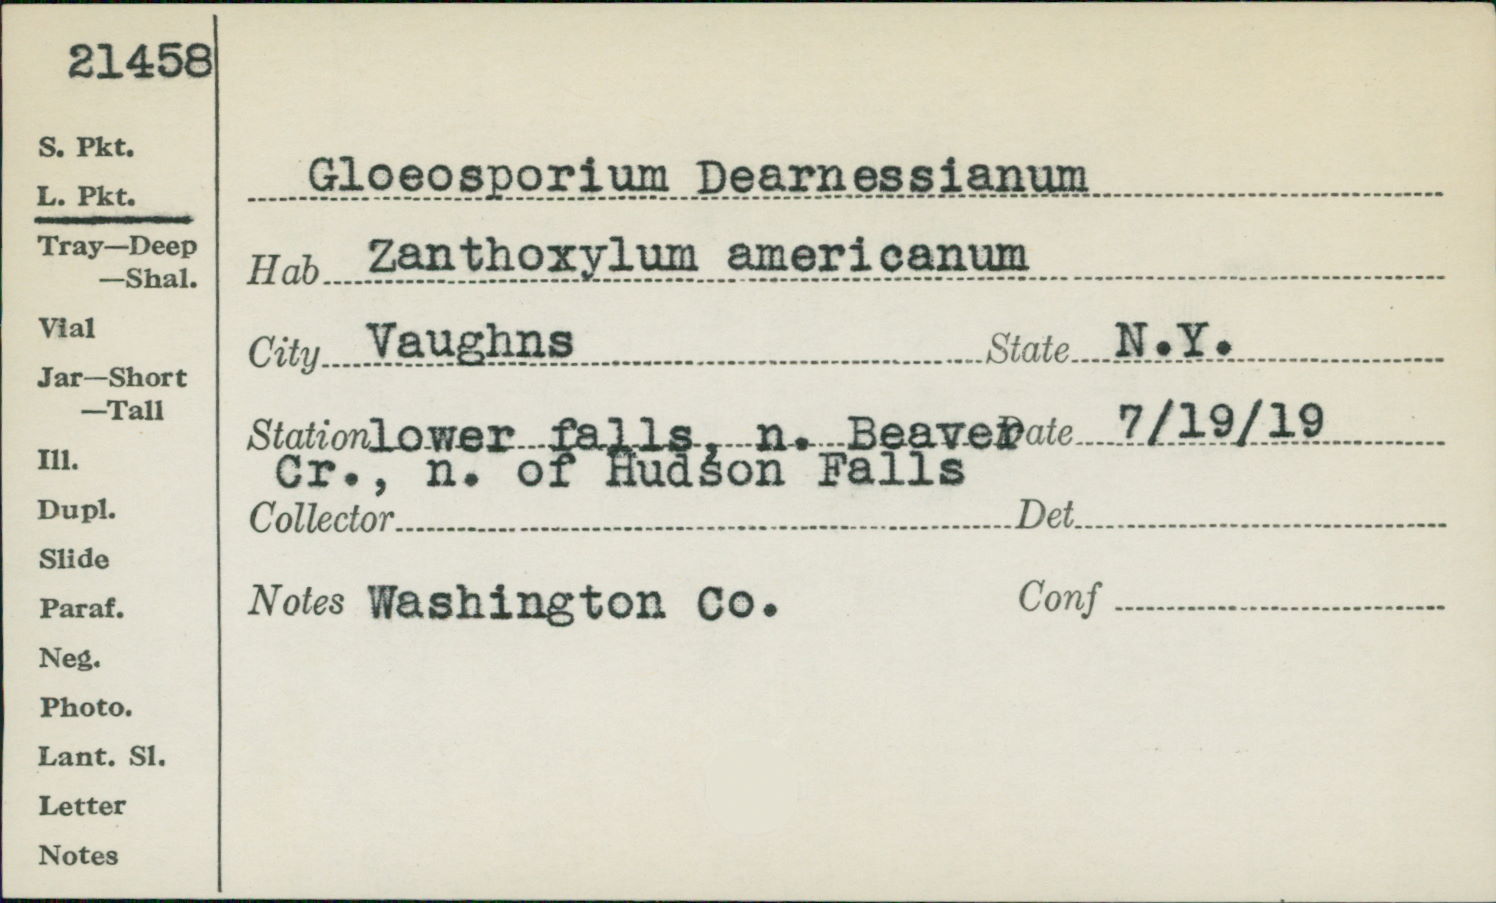 Gloeosporium dearnessianum image